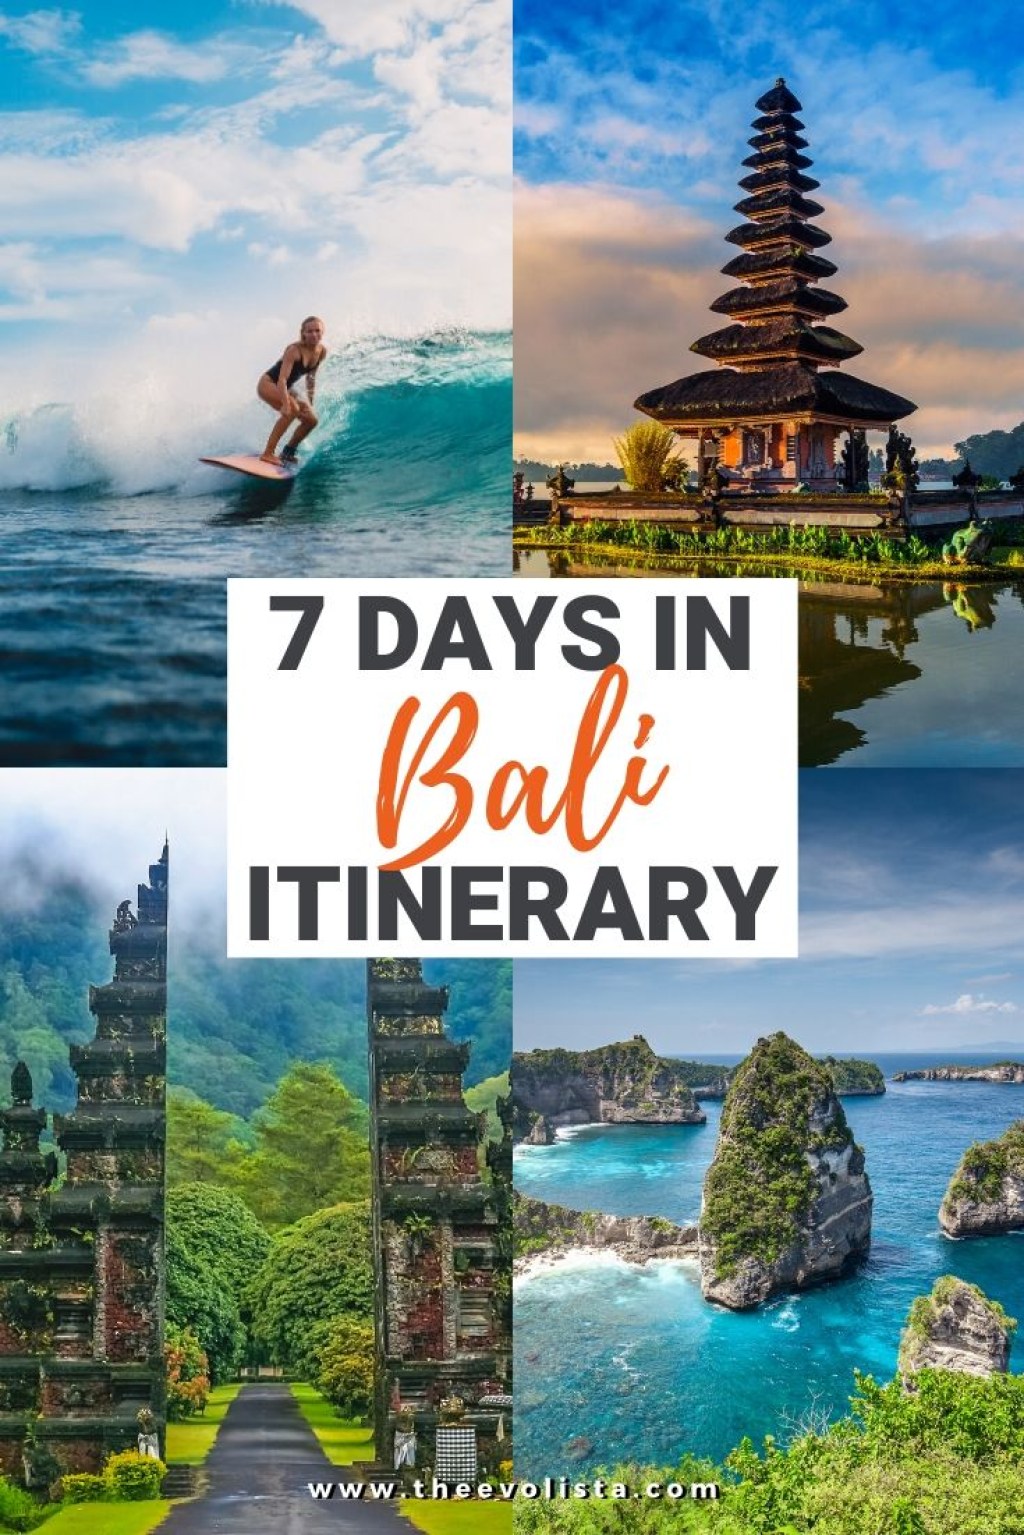 bali trip itinerary 7 days - The Ultimate  Day Bali Itinerary